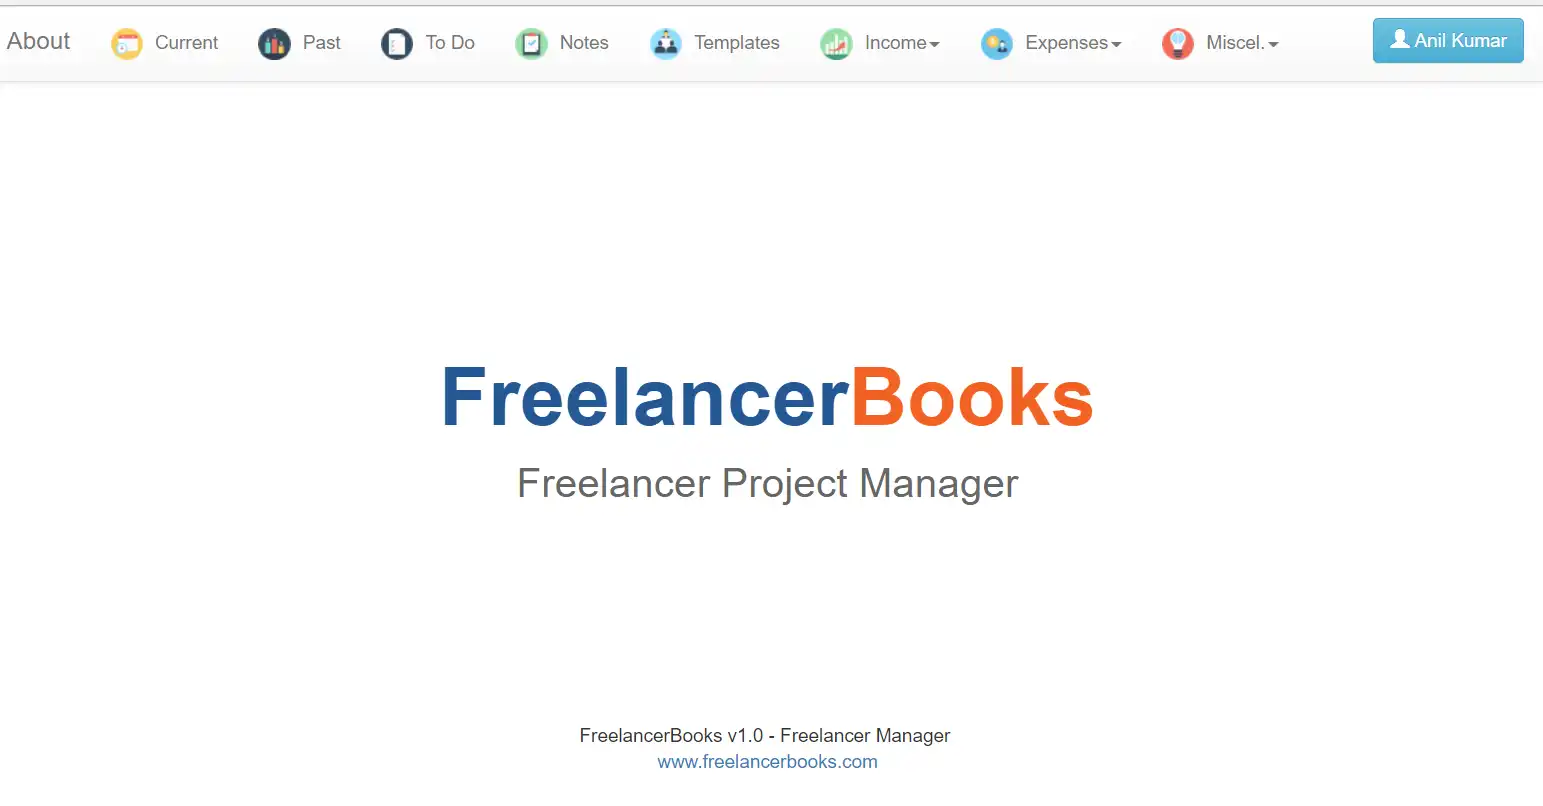 WebツールまたはWebアプリFreelancerBooksをダウンロード-プロジェクト管理